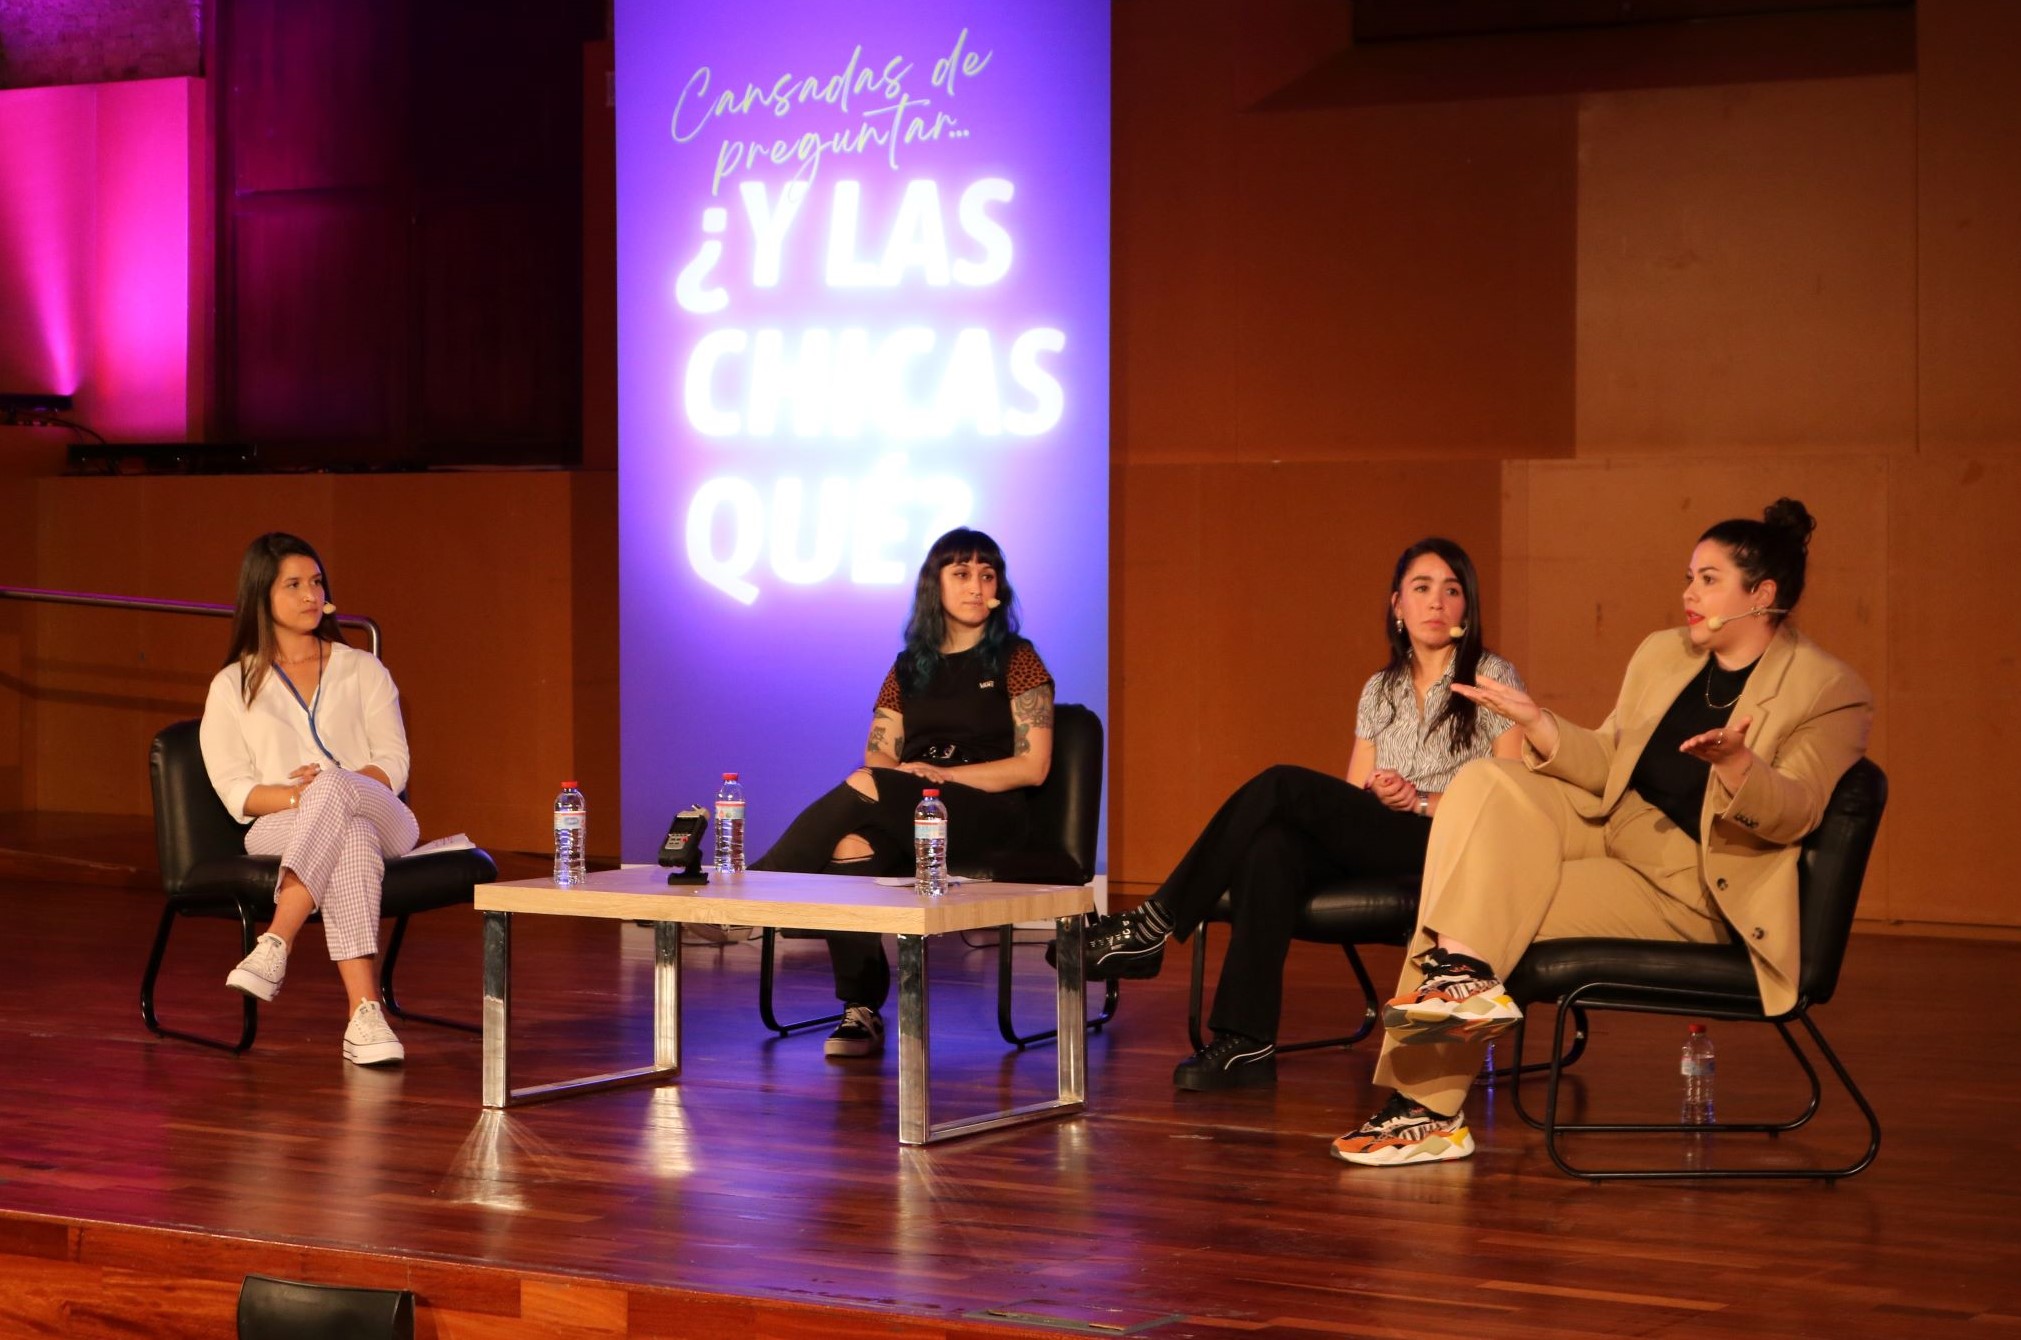 Laura Almenara, Ana Ayala y Mara Jiménez en el escenario, sentadas en butacas hablando